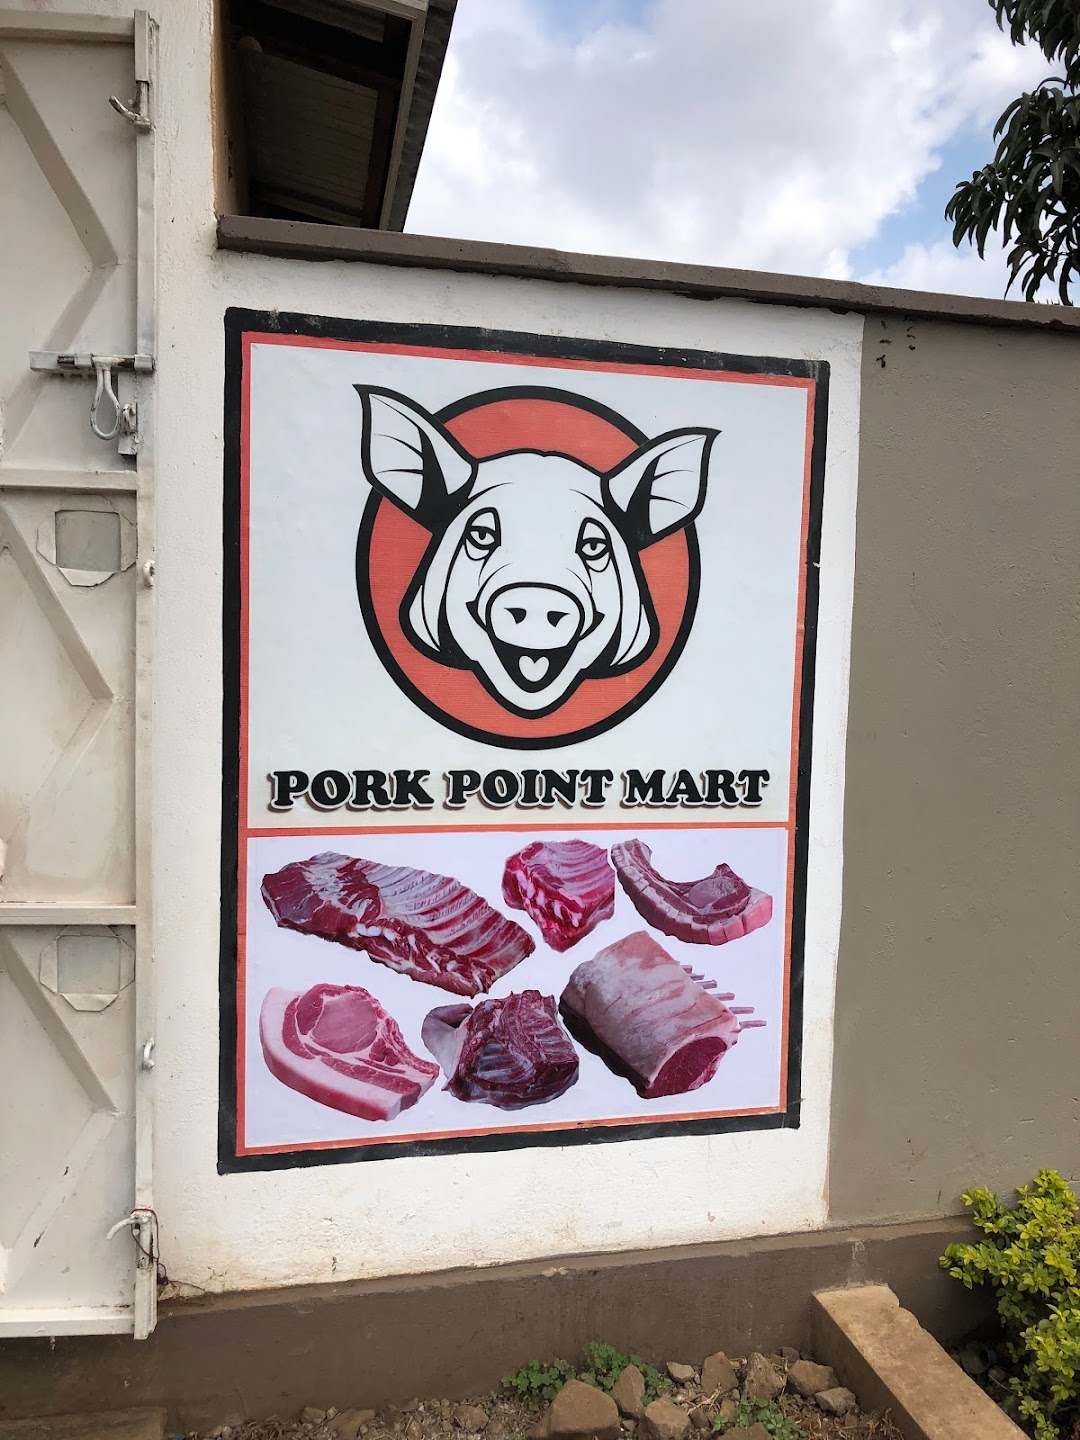 Pork point